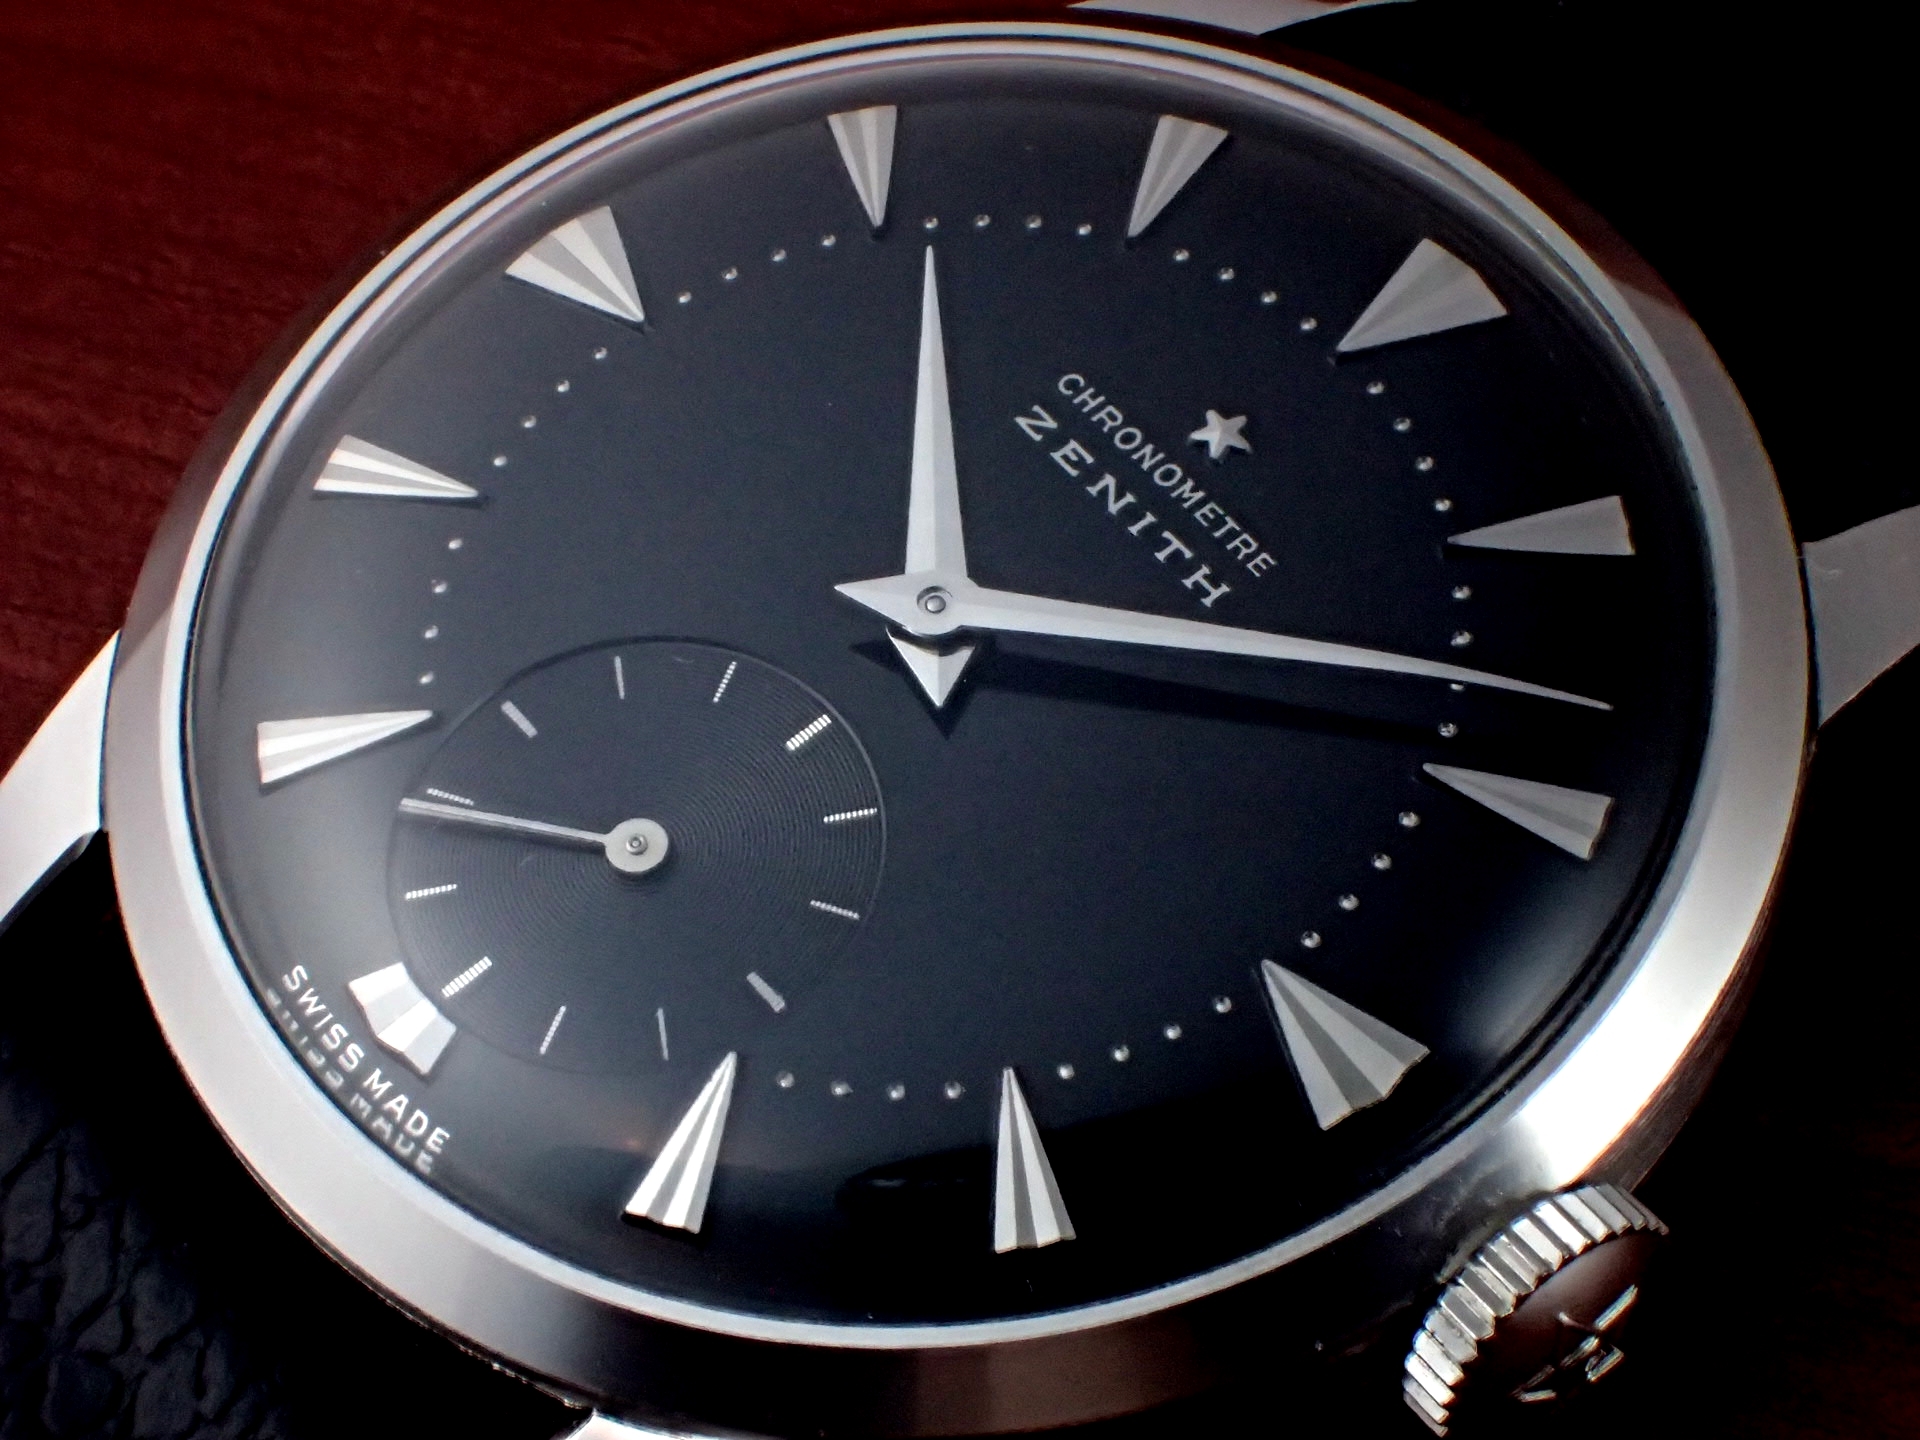 ゼニス クロノメーター Zenith Chronometer - 腕時計(アナログ)